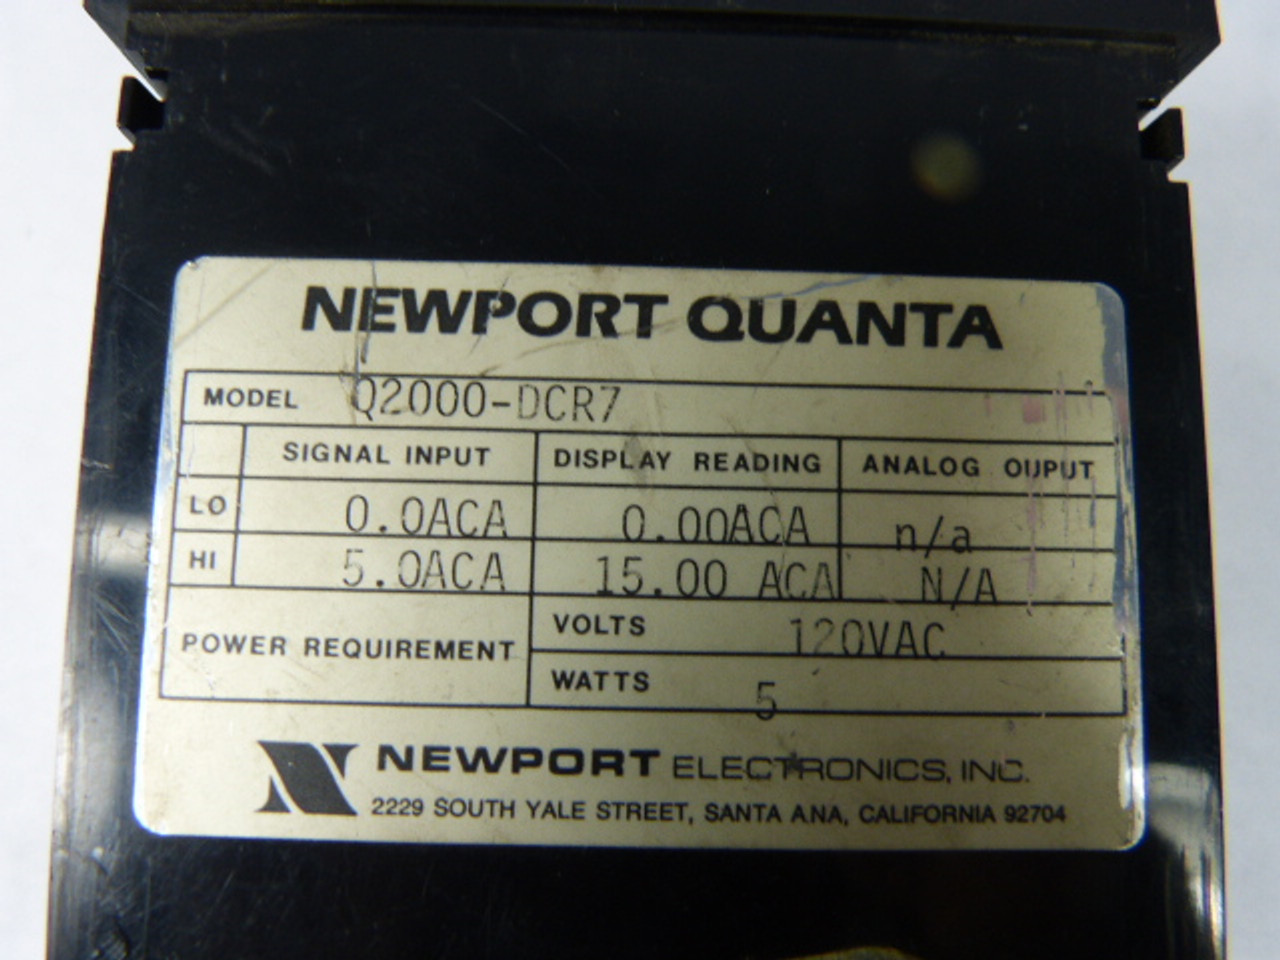 Newport Quanta Q2000DCR7 Digital Panel Meter 4 Digit 0-100ACA USED